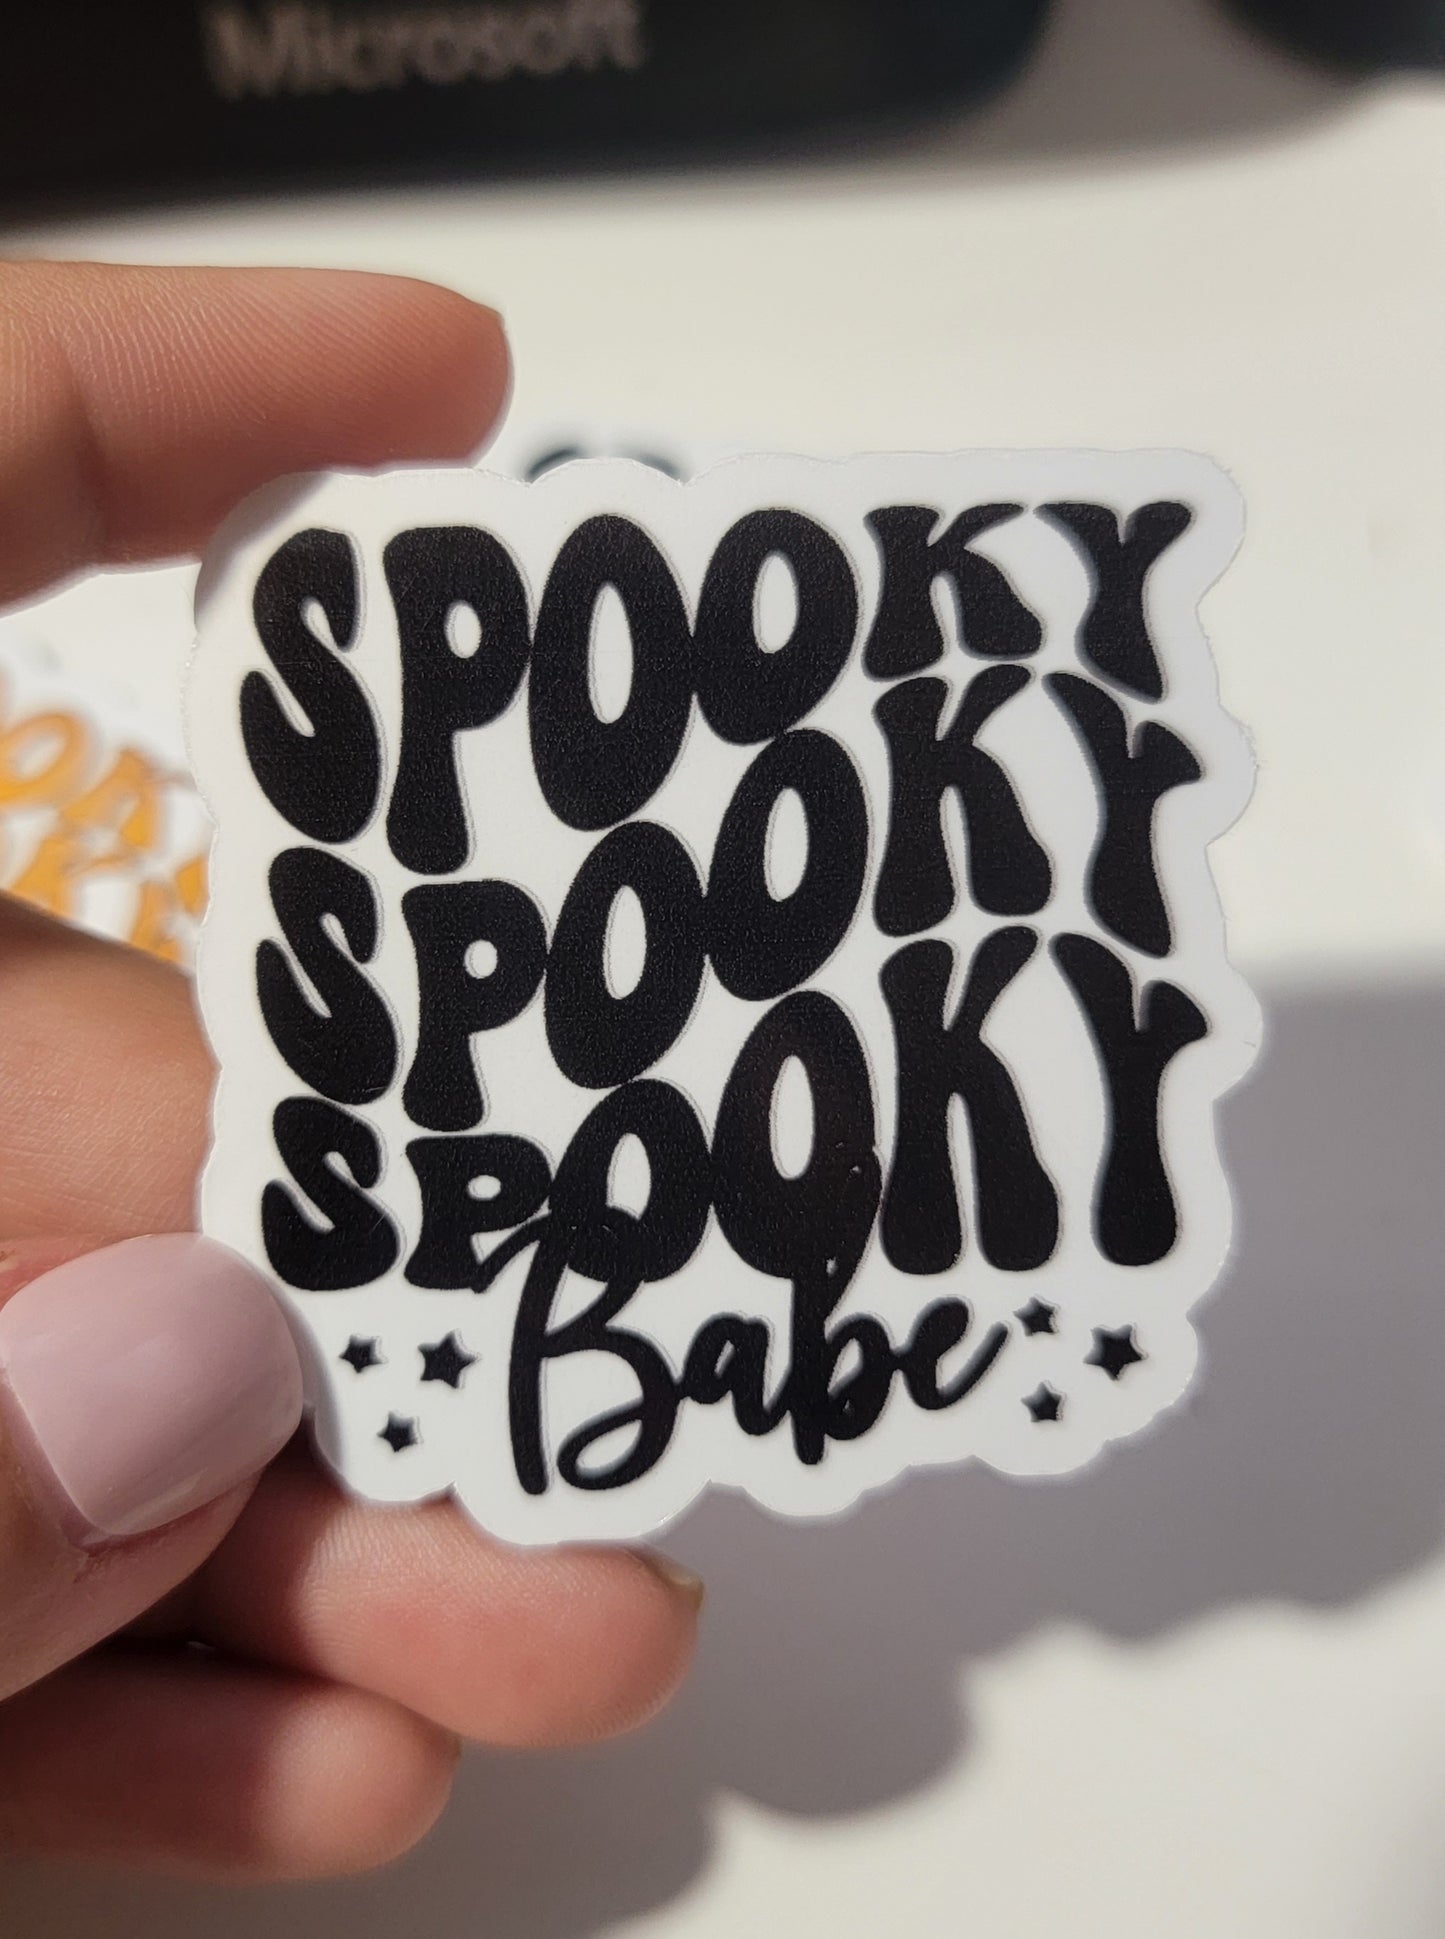 Spooky spooky spooky babe sticker